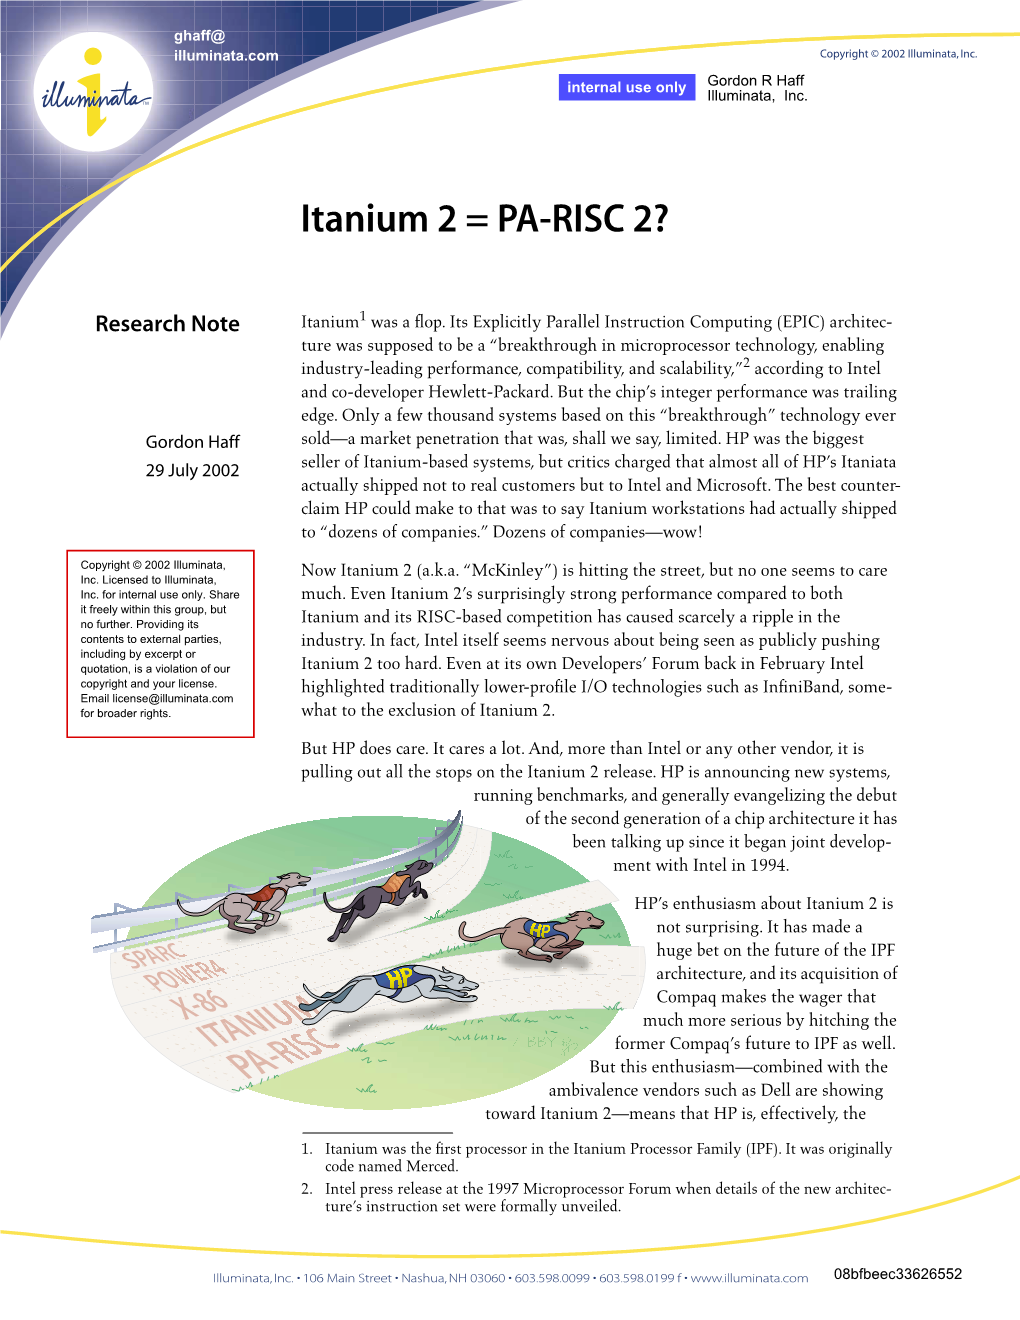 Itanium 2 = PA-RISC 2?